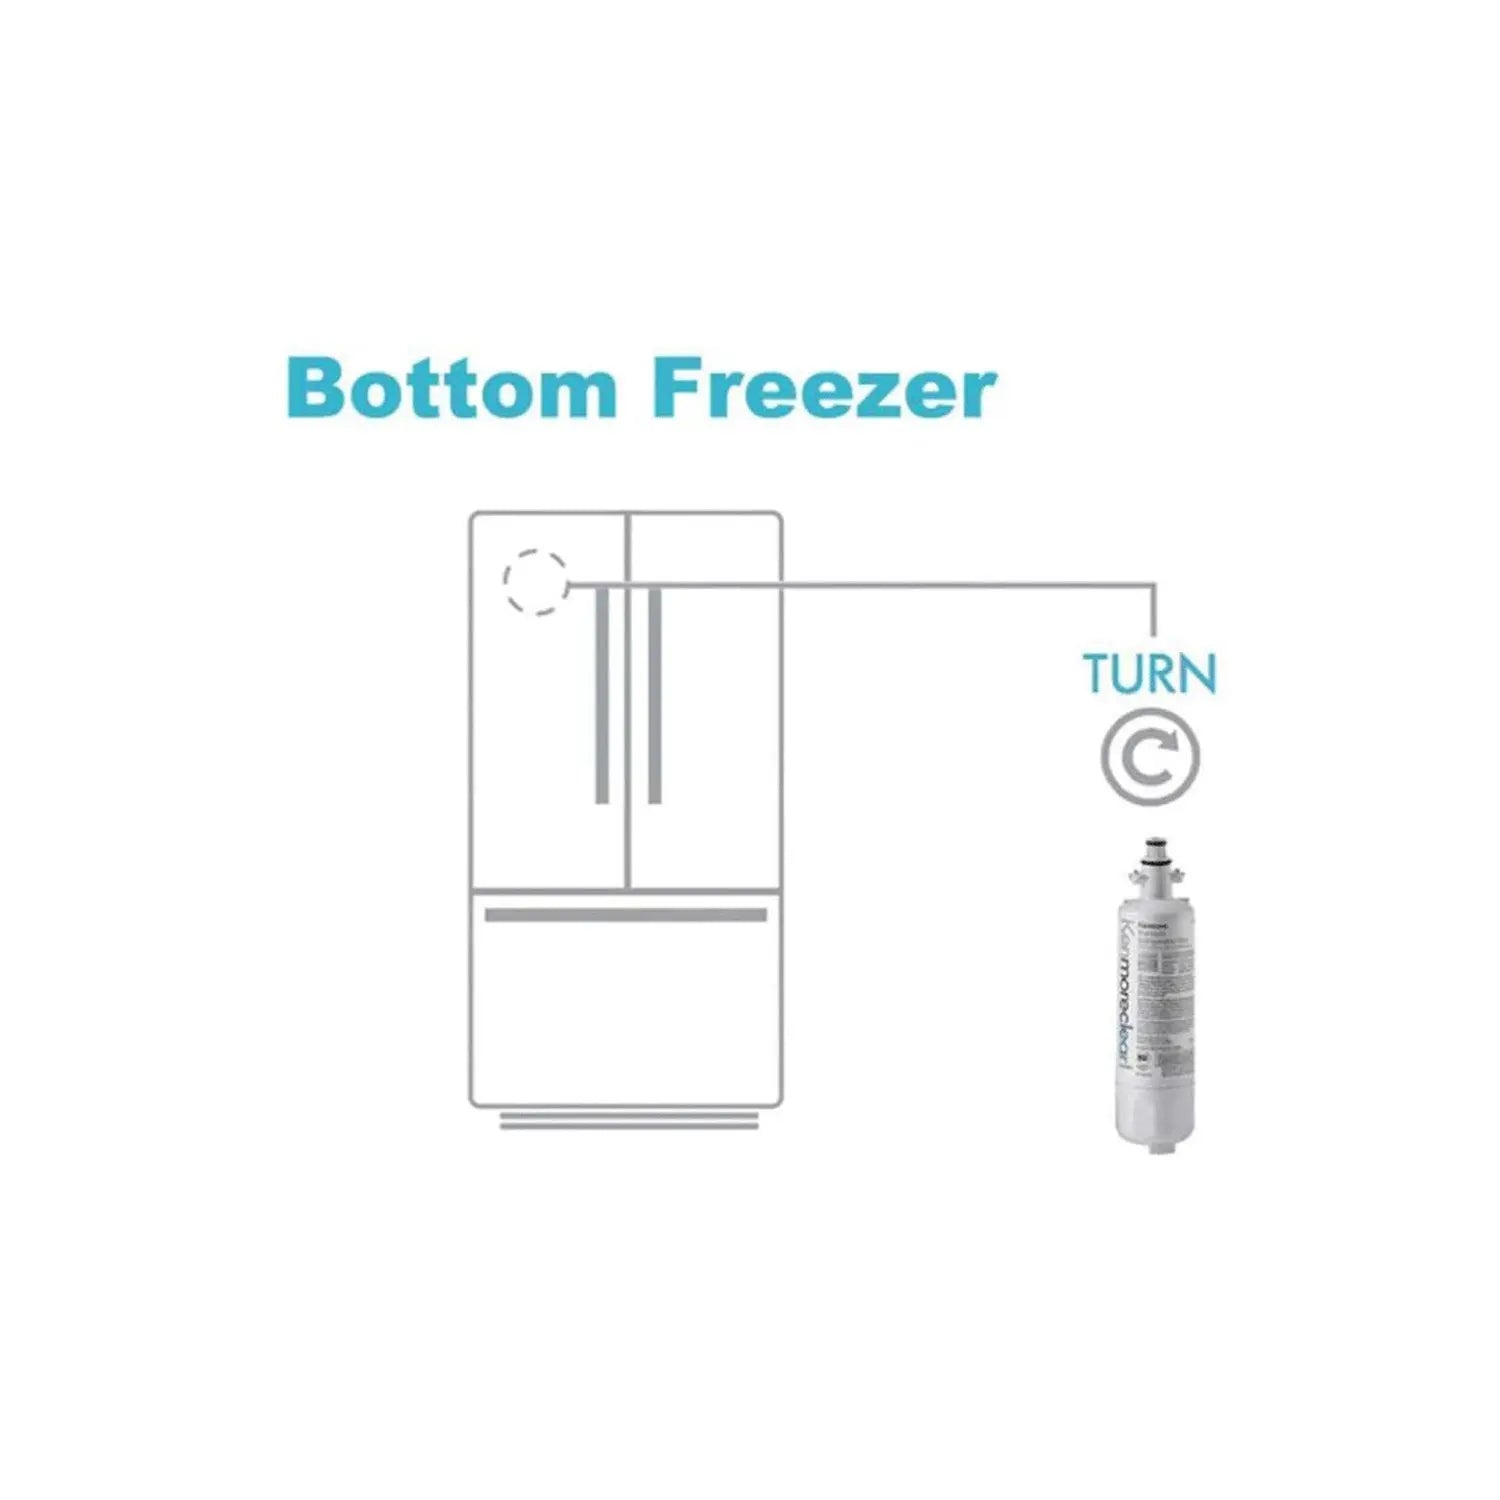 Κеnmore 9690 water filter Replacement Refrigerator Water Filter. Kenmore